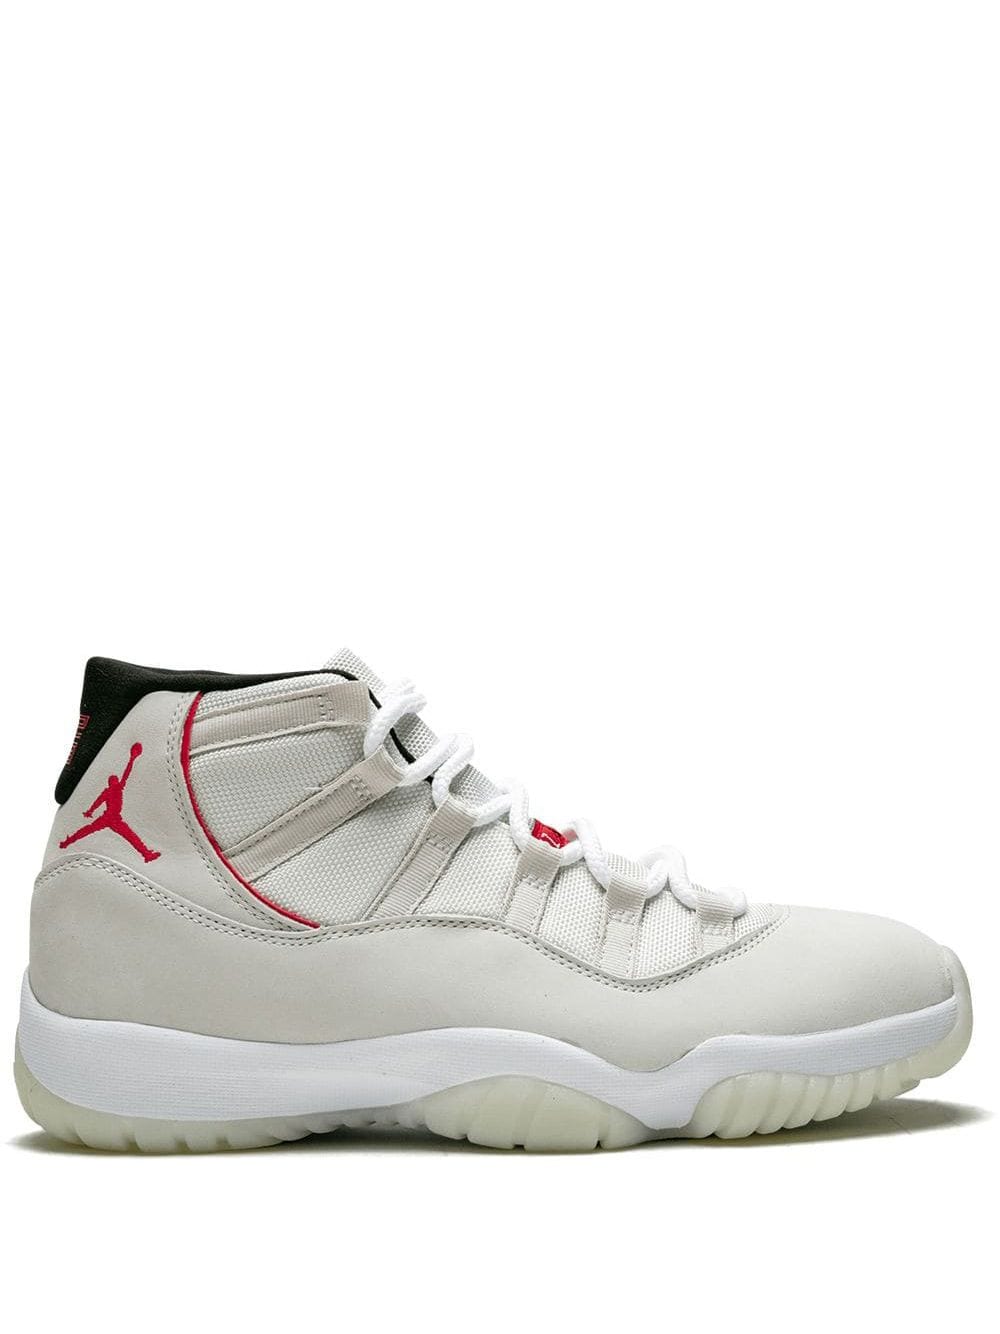 Jordan Air Jordan 11 Retro "Platinum Tint" sneakers - White